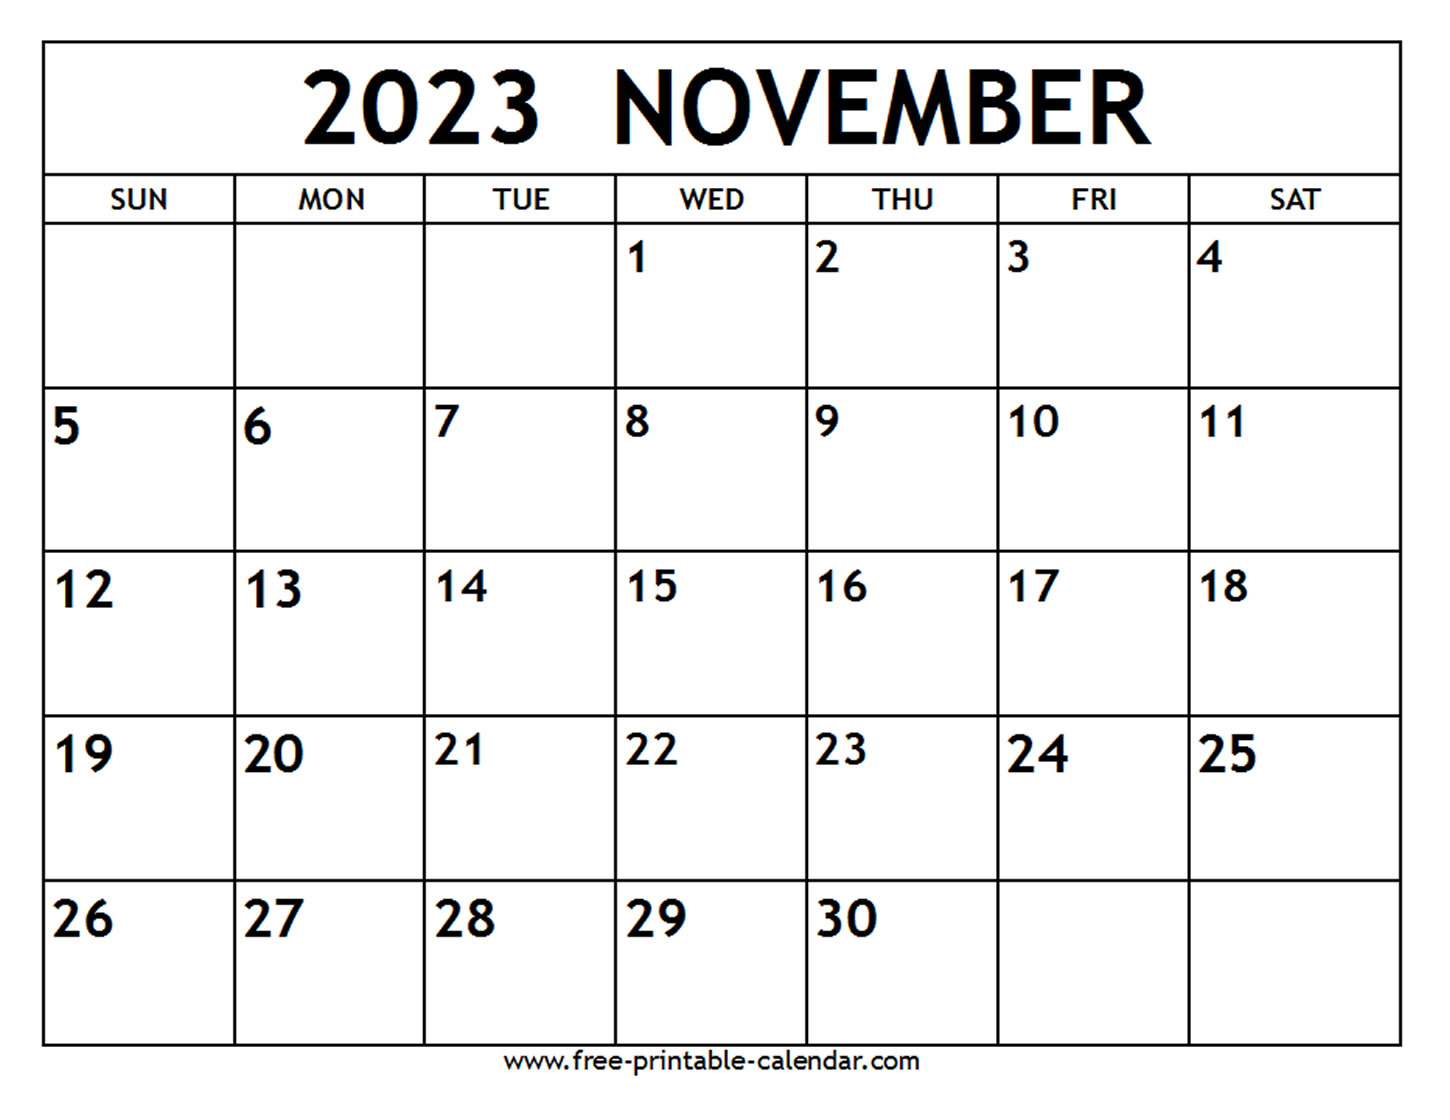 November 2023 Calendar - Free-printable-calendar.com